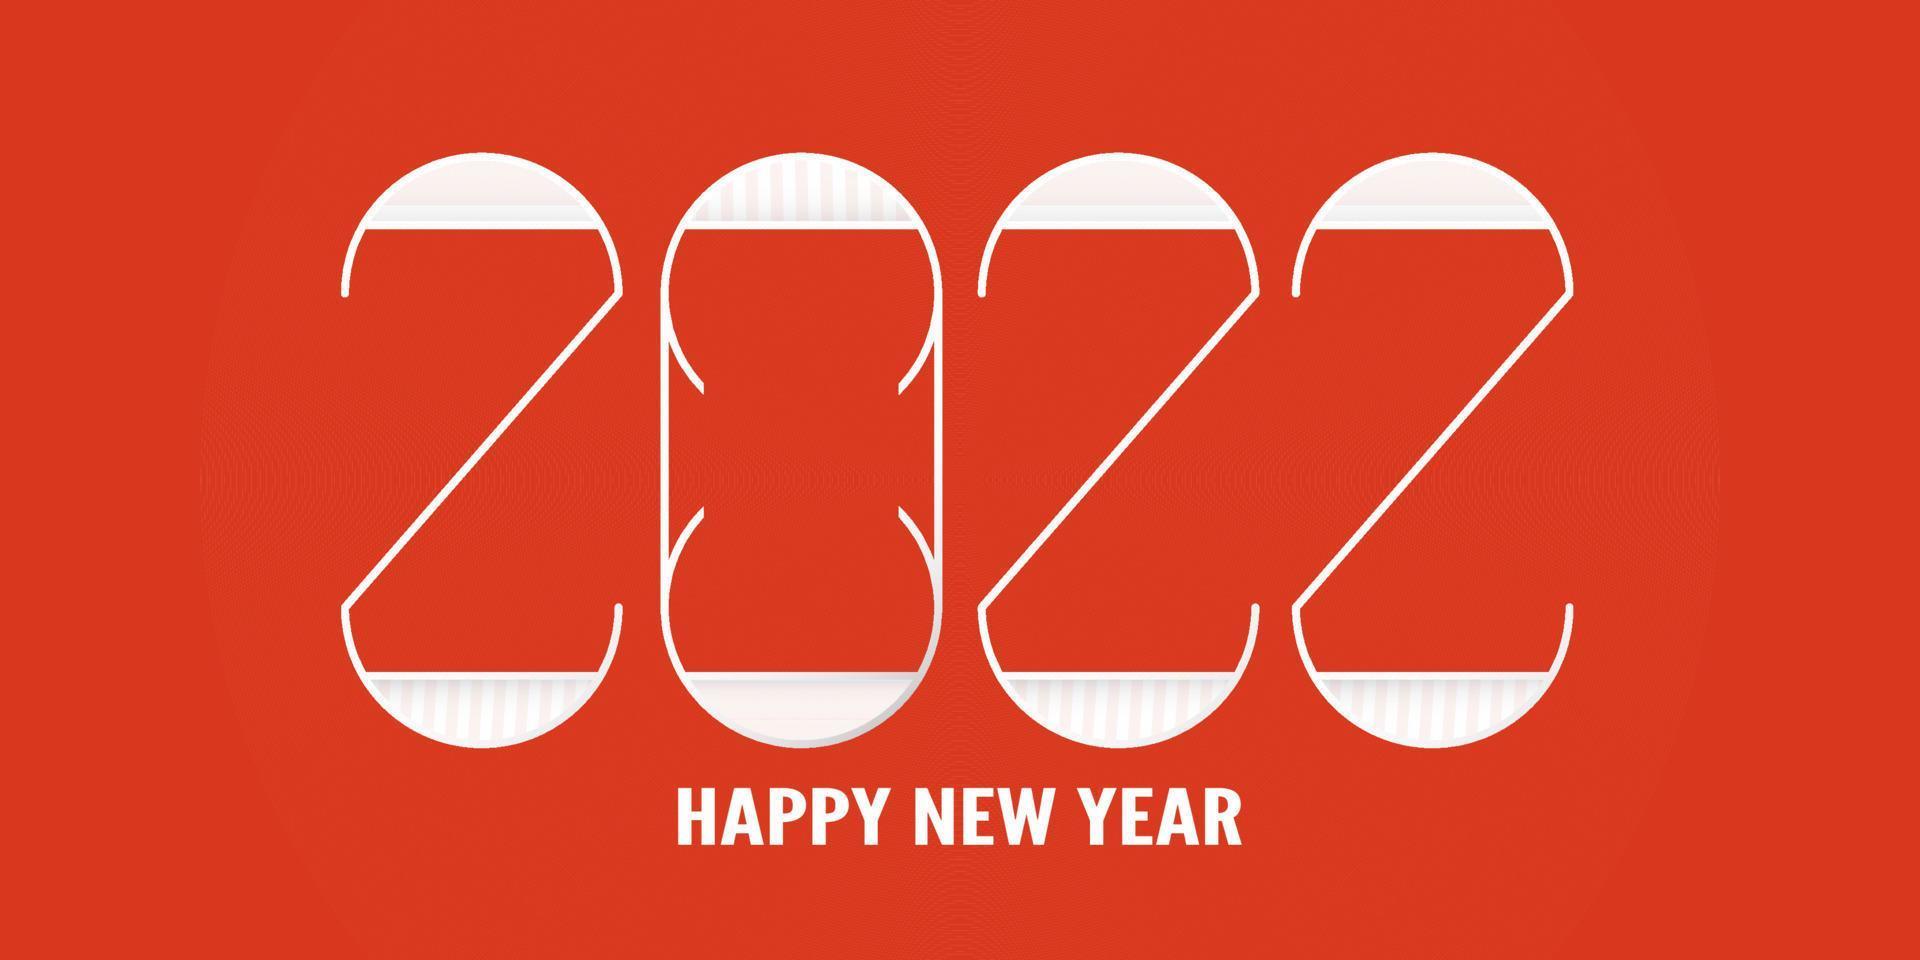 Frohes neues Jahr 2022. Template-Design für Cover-Buch, Banner, Einladung, Poster, Flyer. Vektorillustration im Scherenschnitt und im Handwerksstil. vektor